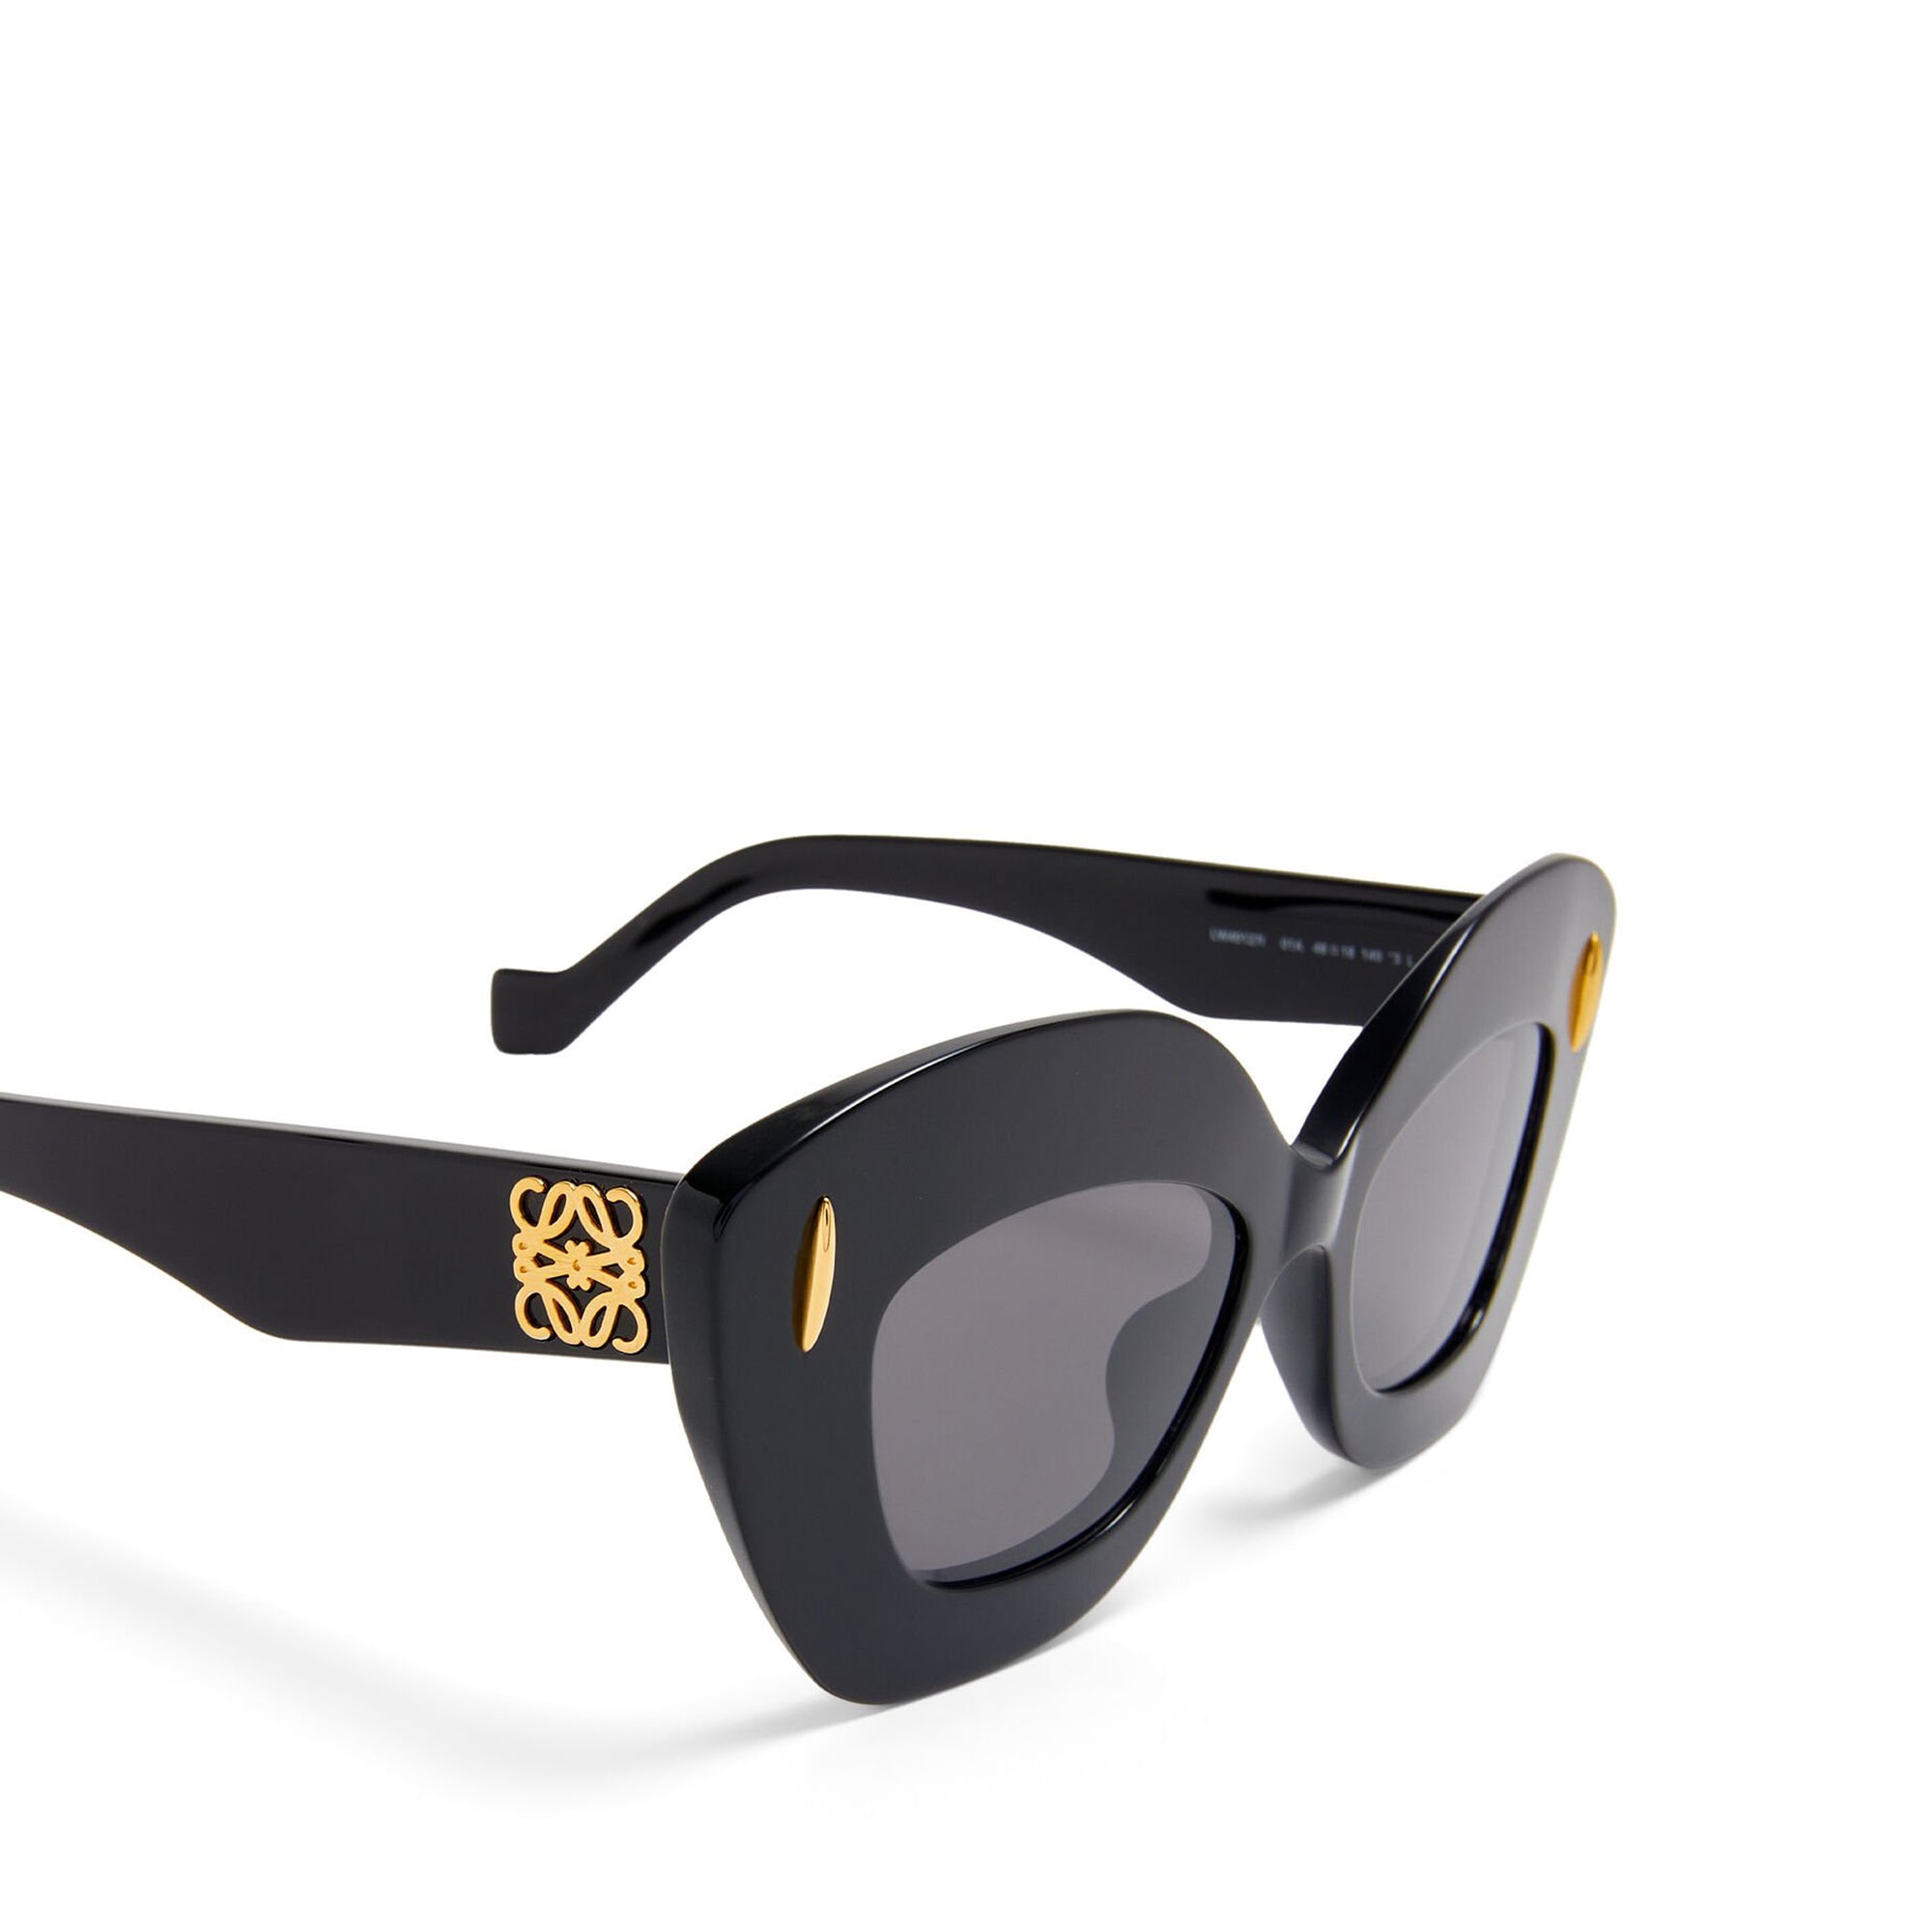 Loewe - Women's Retro Screen Sunglasses - (Black) view 4